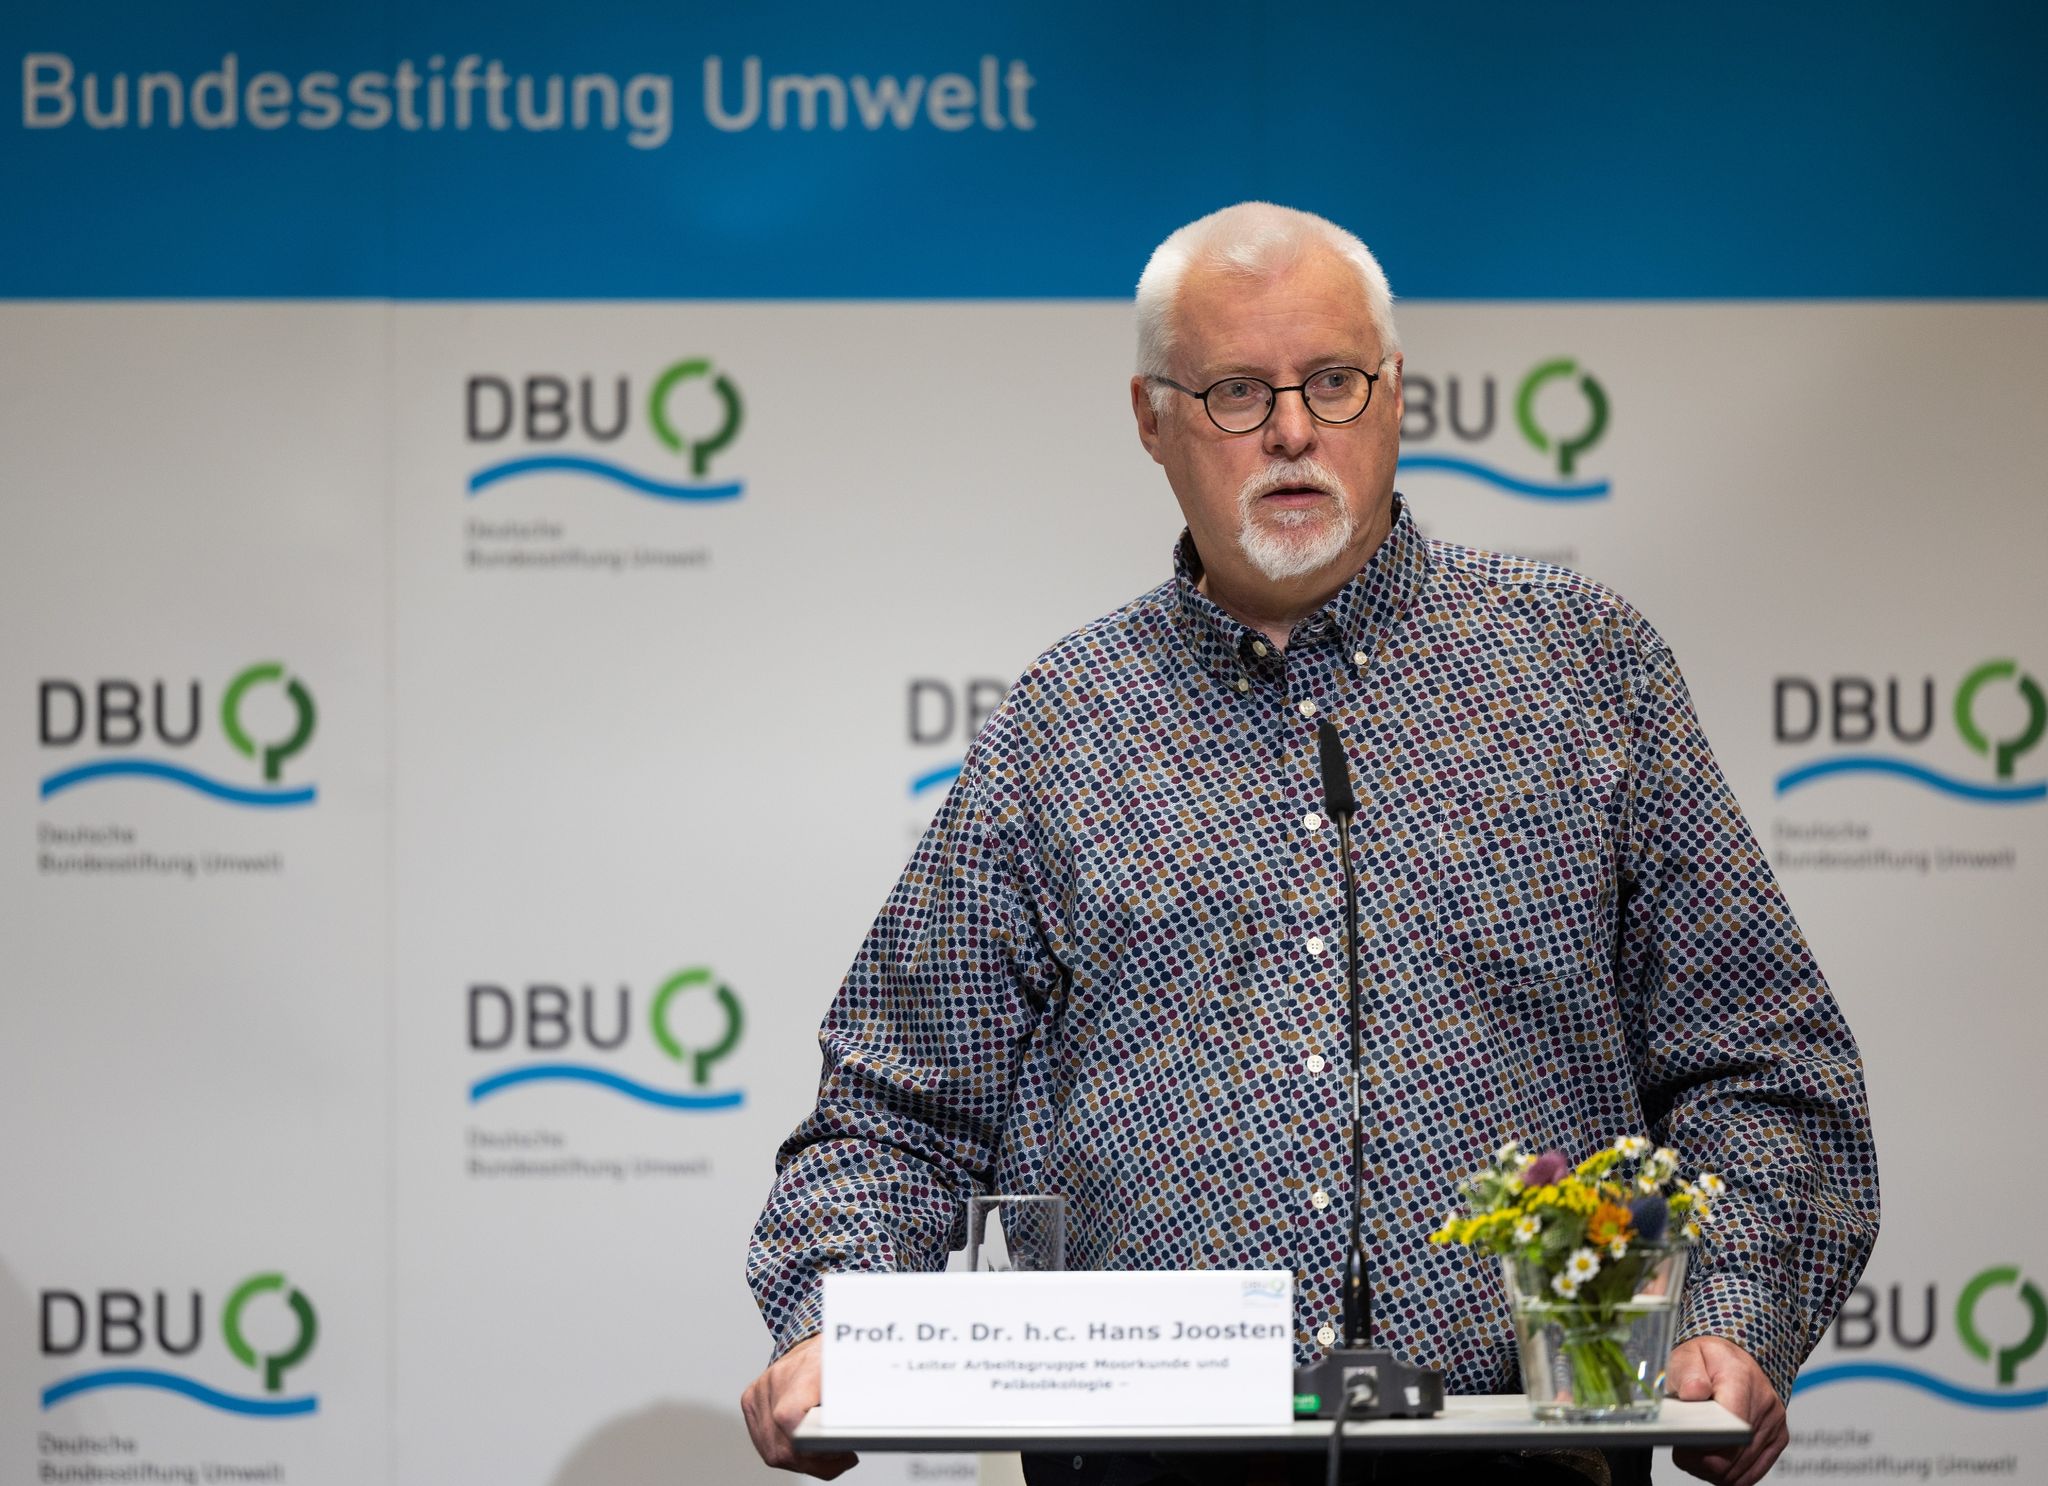 Der Greifswalder Forscher Hans Joosten spricht auf einer Bühne.